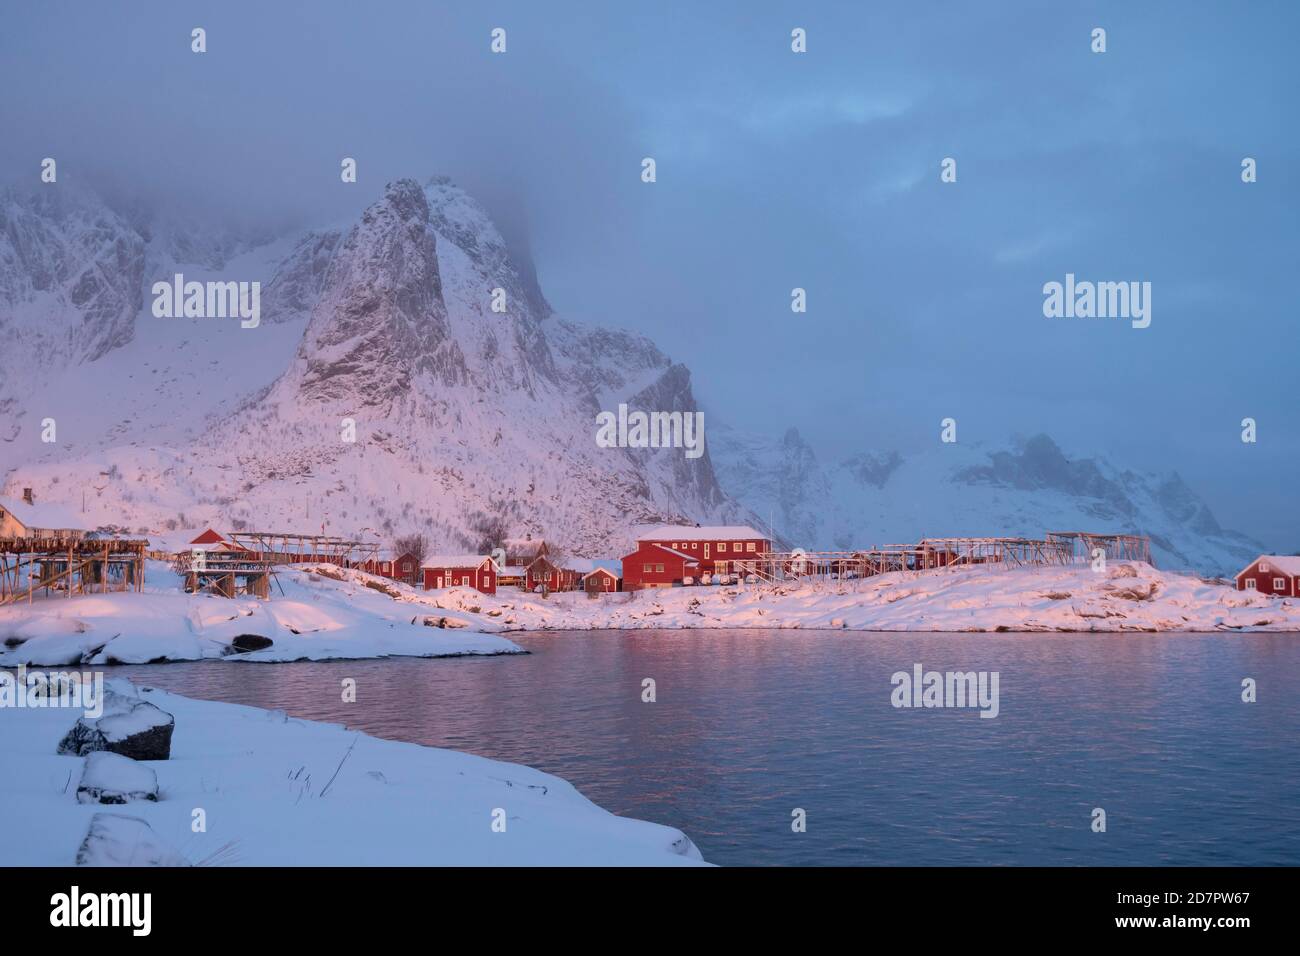 Winterstimmung am frühen Morgen in einem Fischerdorf, Stockfischregale, Schneefall in den Bergen, reine, Nordland, Lofoten, Norwegen Stockfoto